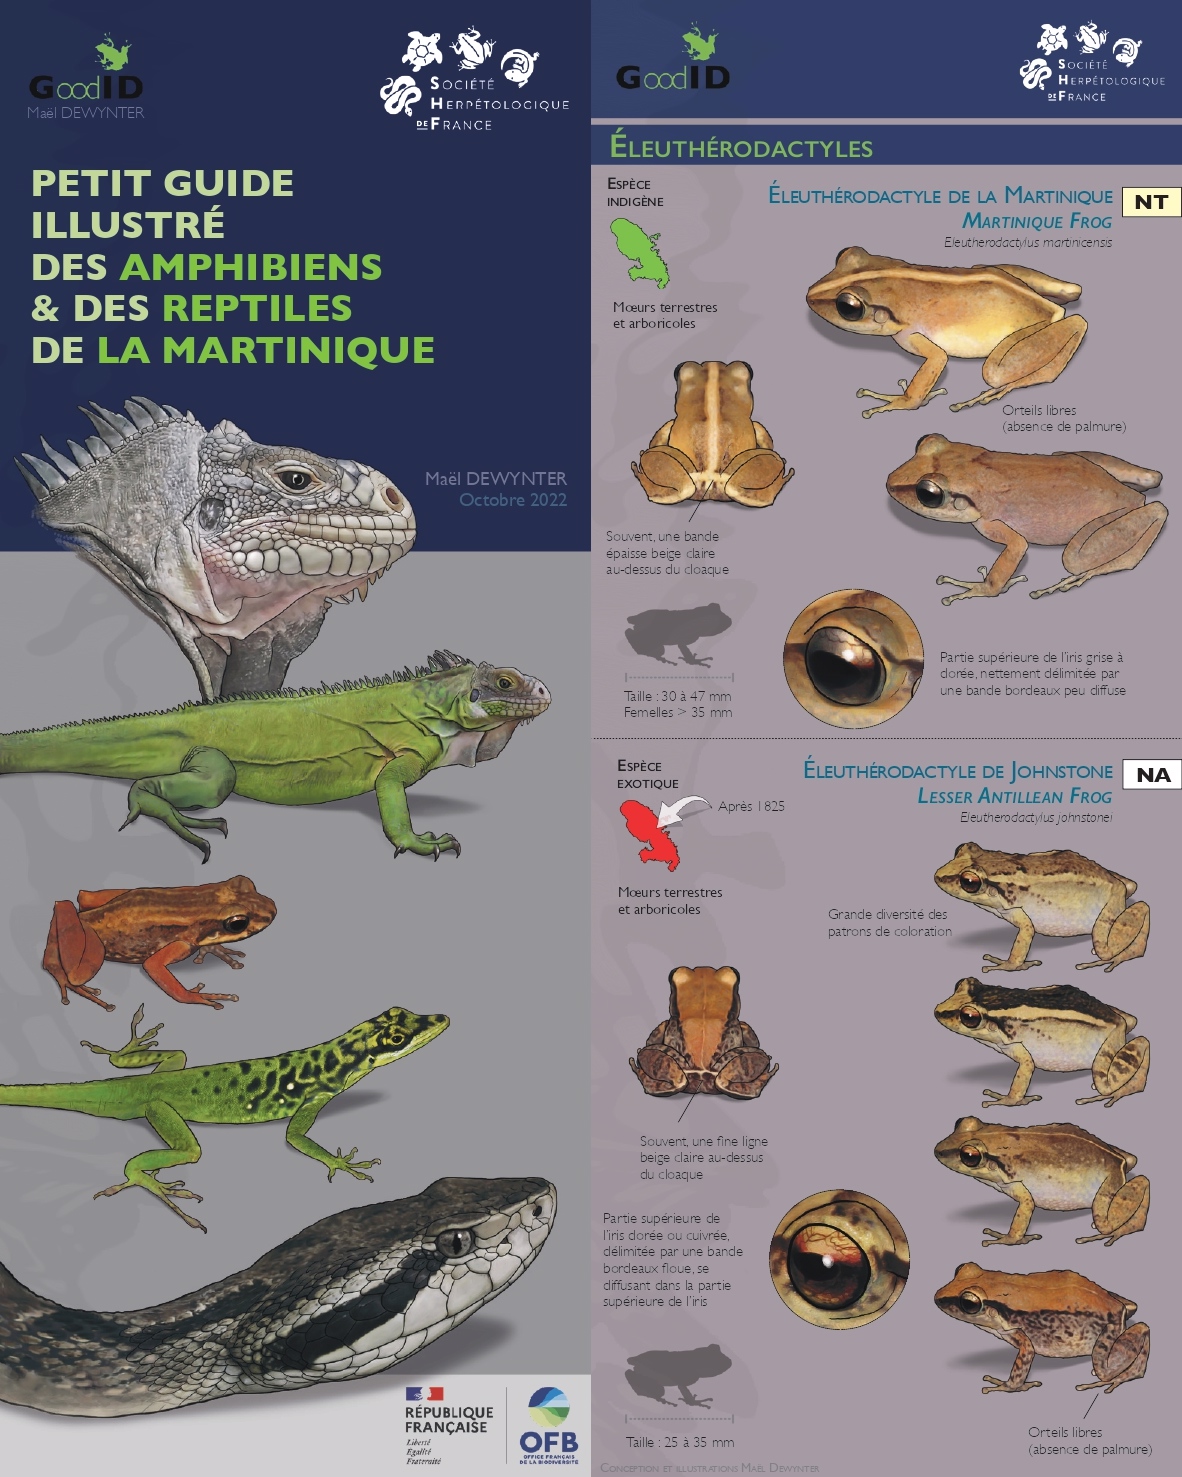 Petit guide illustré des amphibiens et reptiles de la Martinique © Maël Dewynter